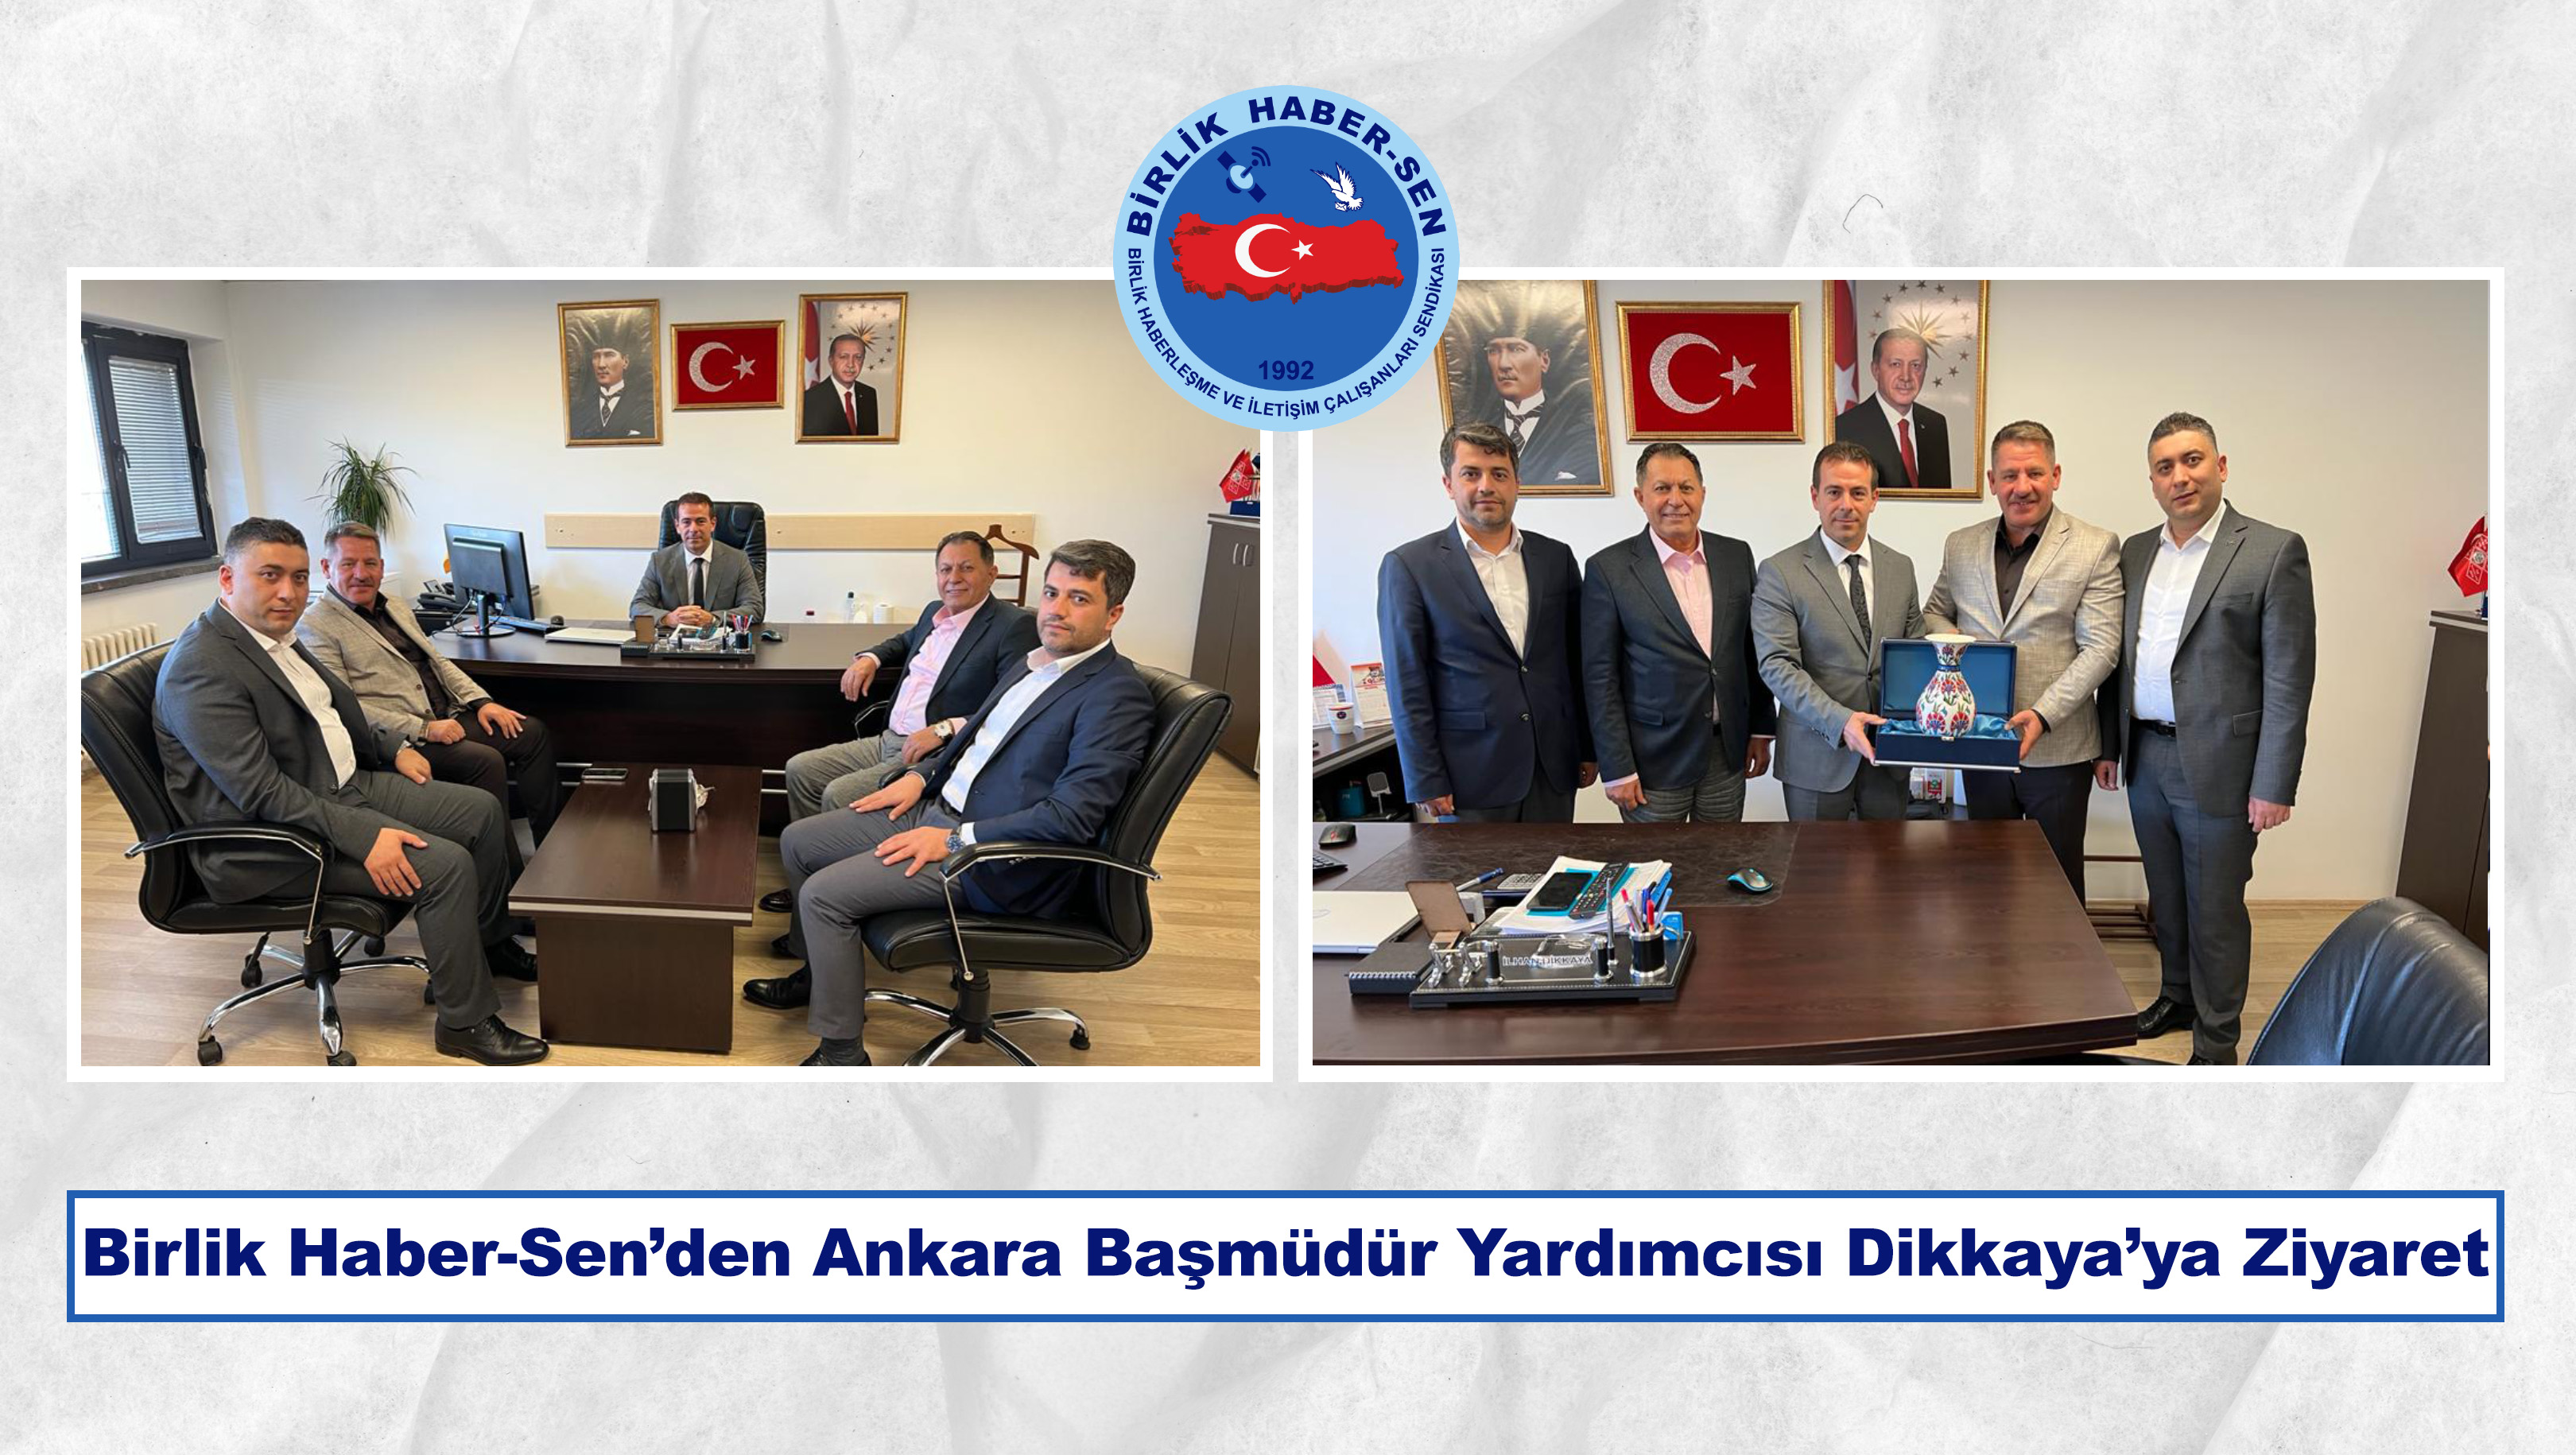 Birlik Haber-Sen’den Ankara Başmüdür Yardımcısı Dikkaya’ya Ziyaret